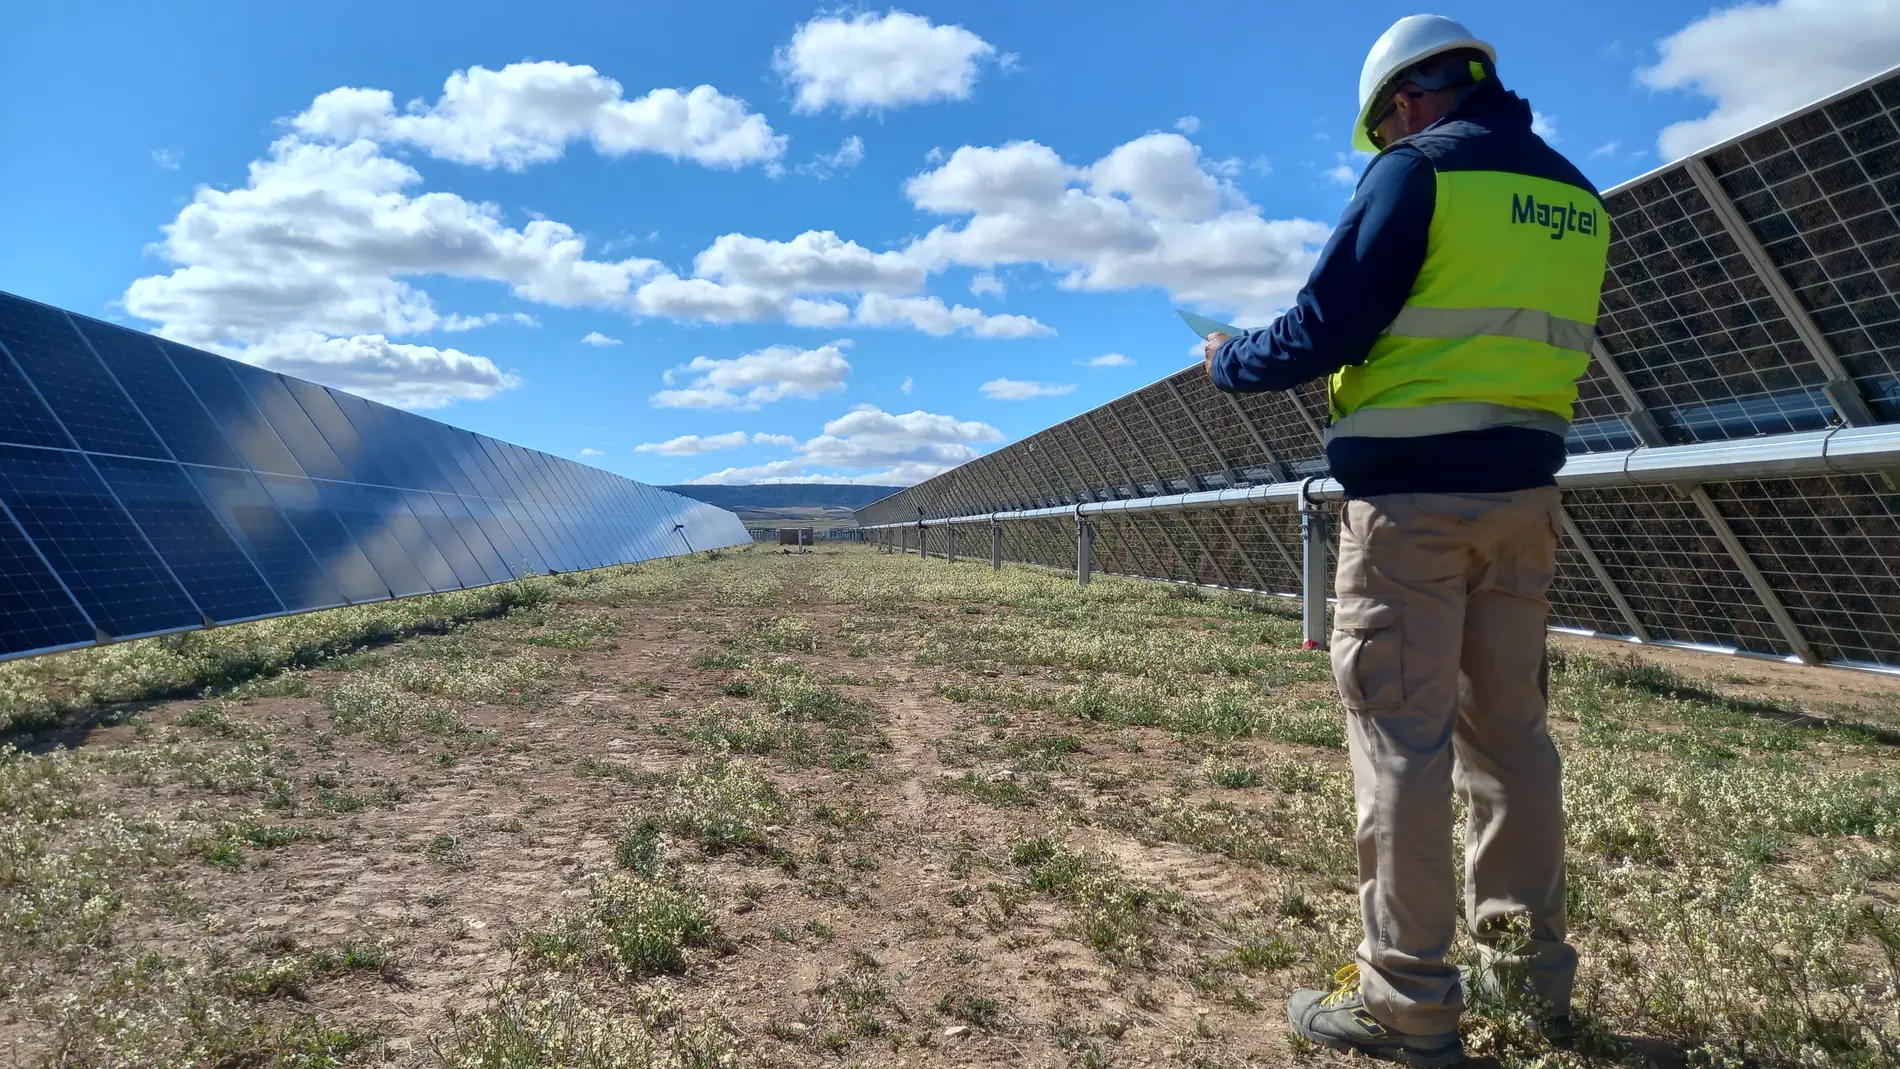 Magtel construye un parque fotovoltaico en Zaragoza para OPDEnergy